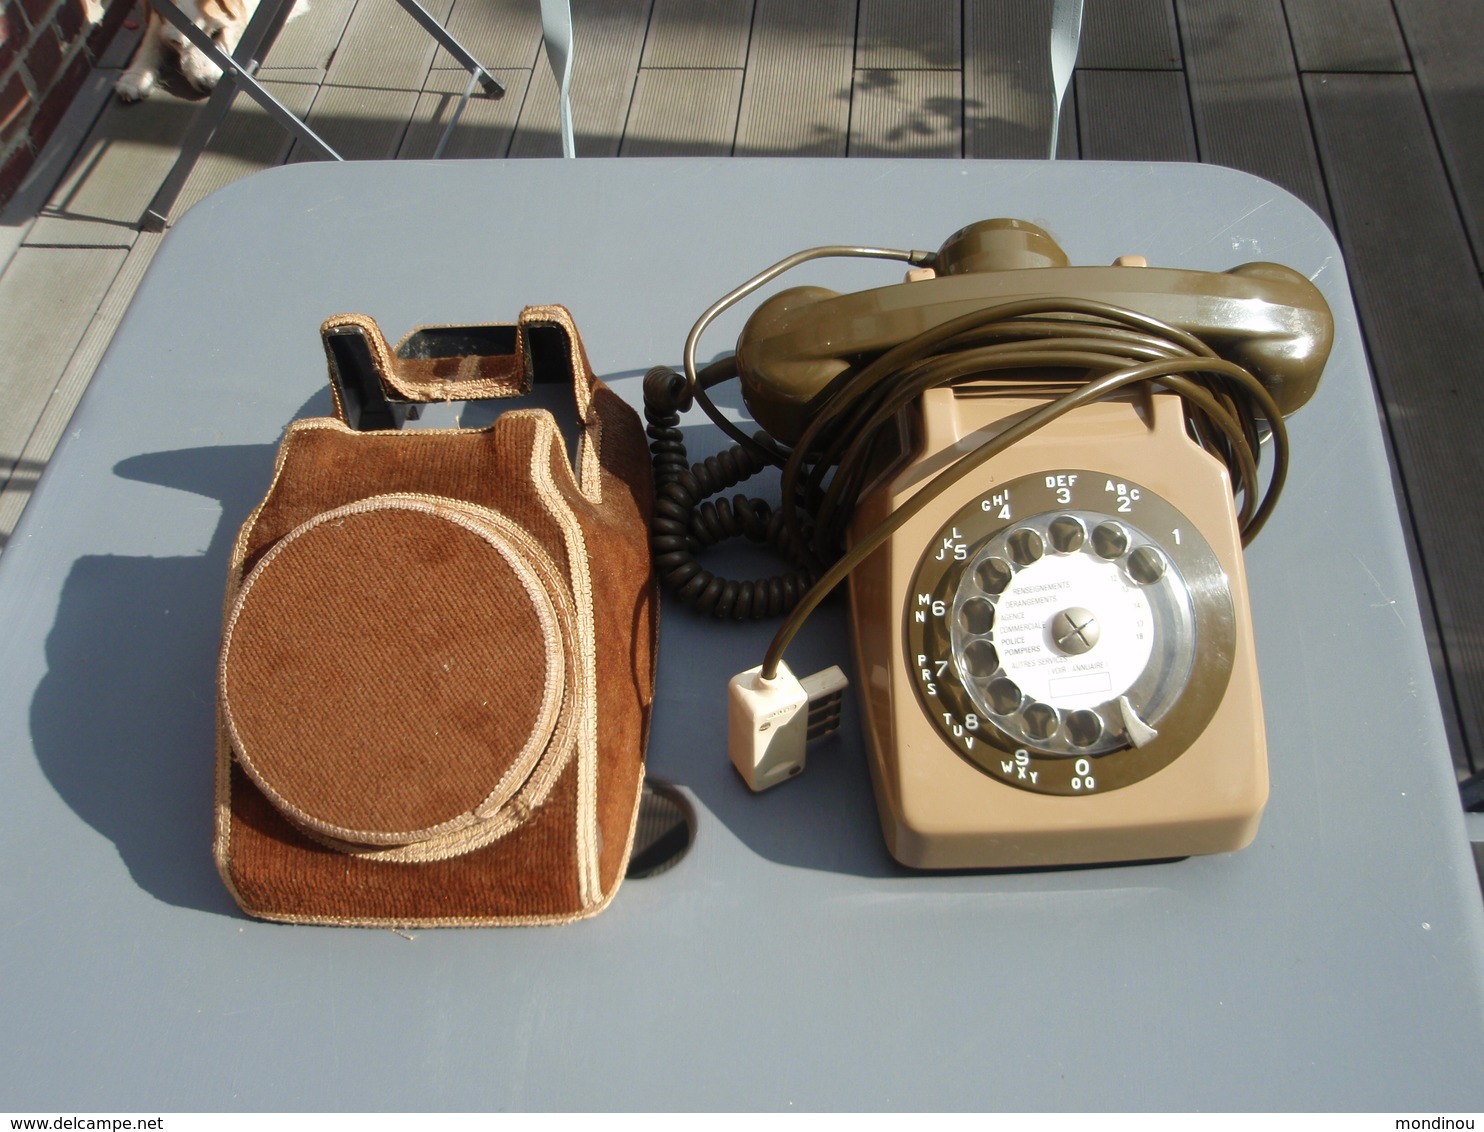 Ancien Téléphone à Cadran Avec Sa Housse De Protection Vintage - Telephony